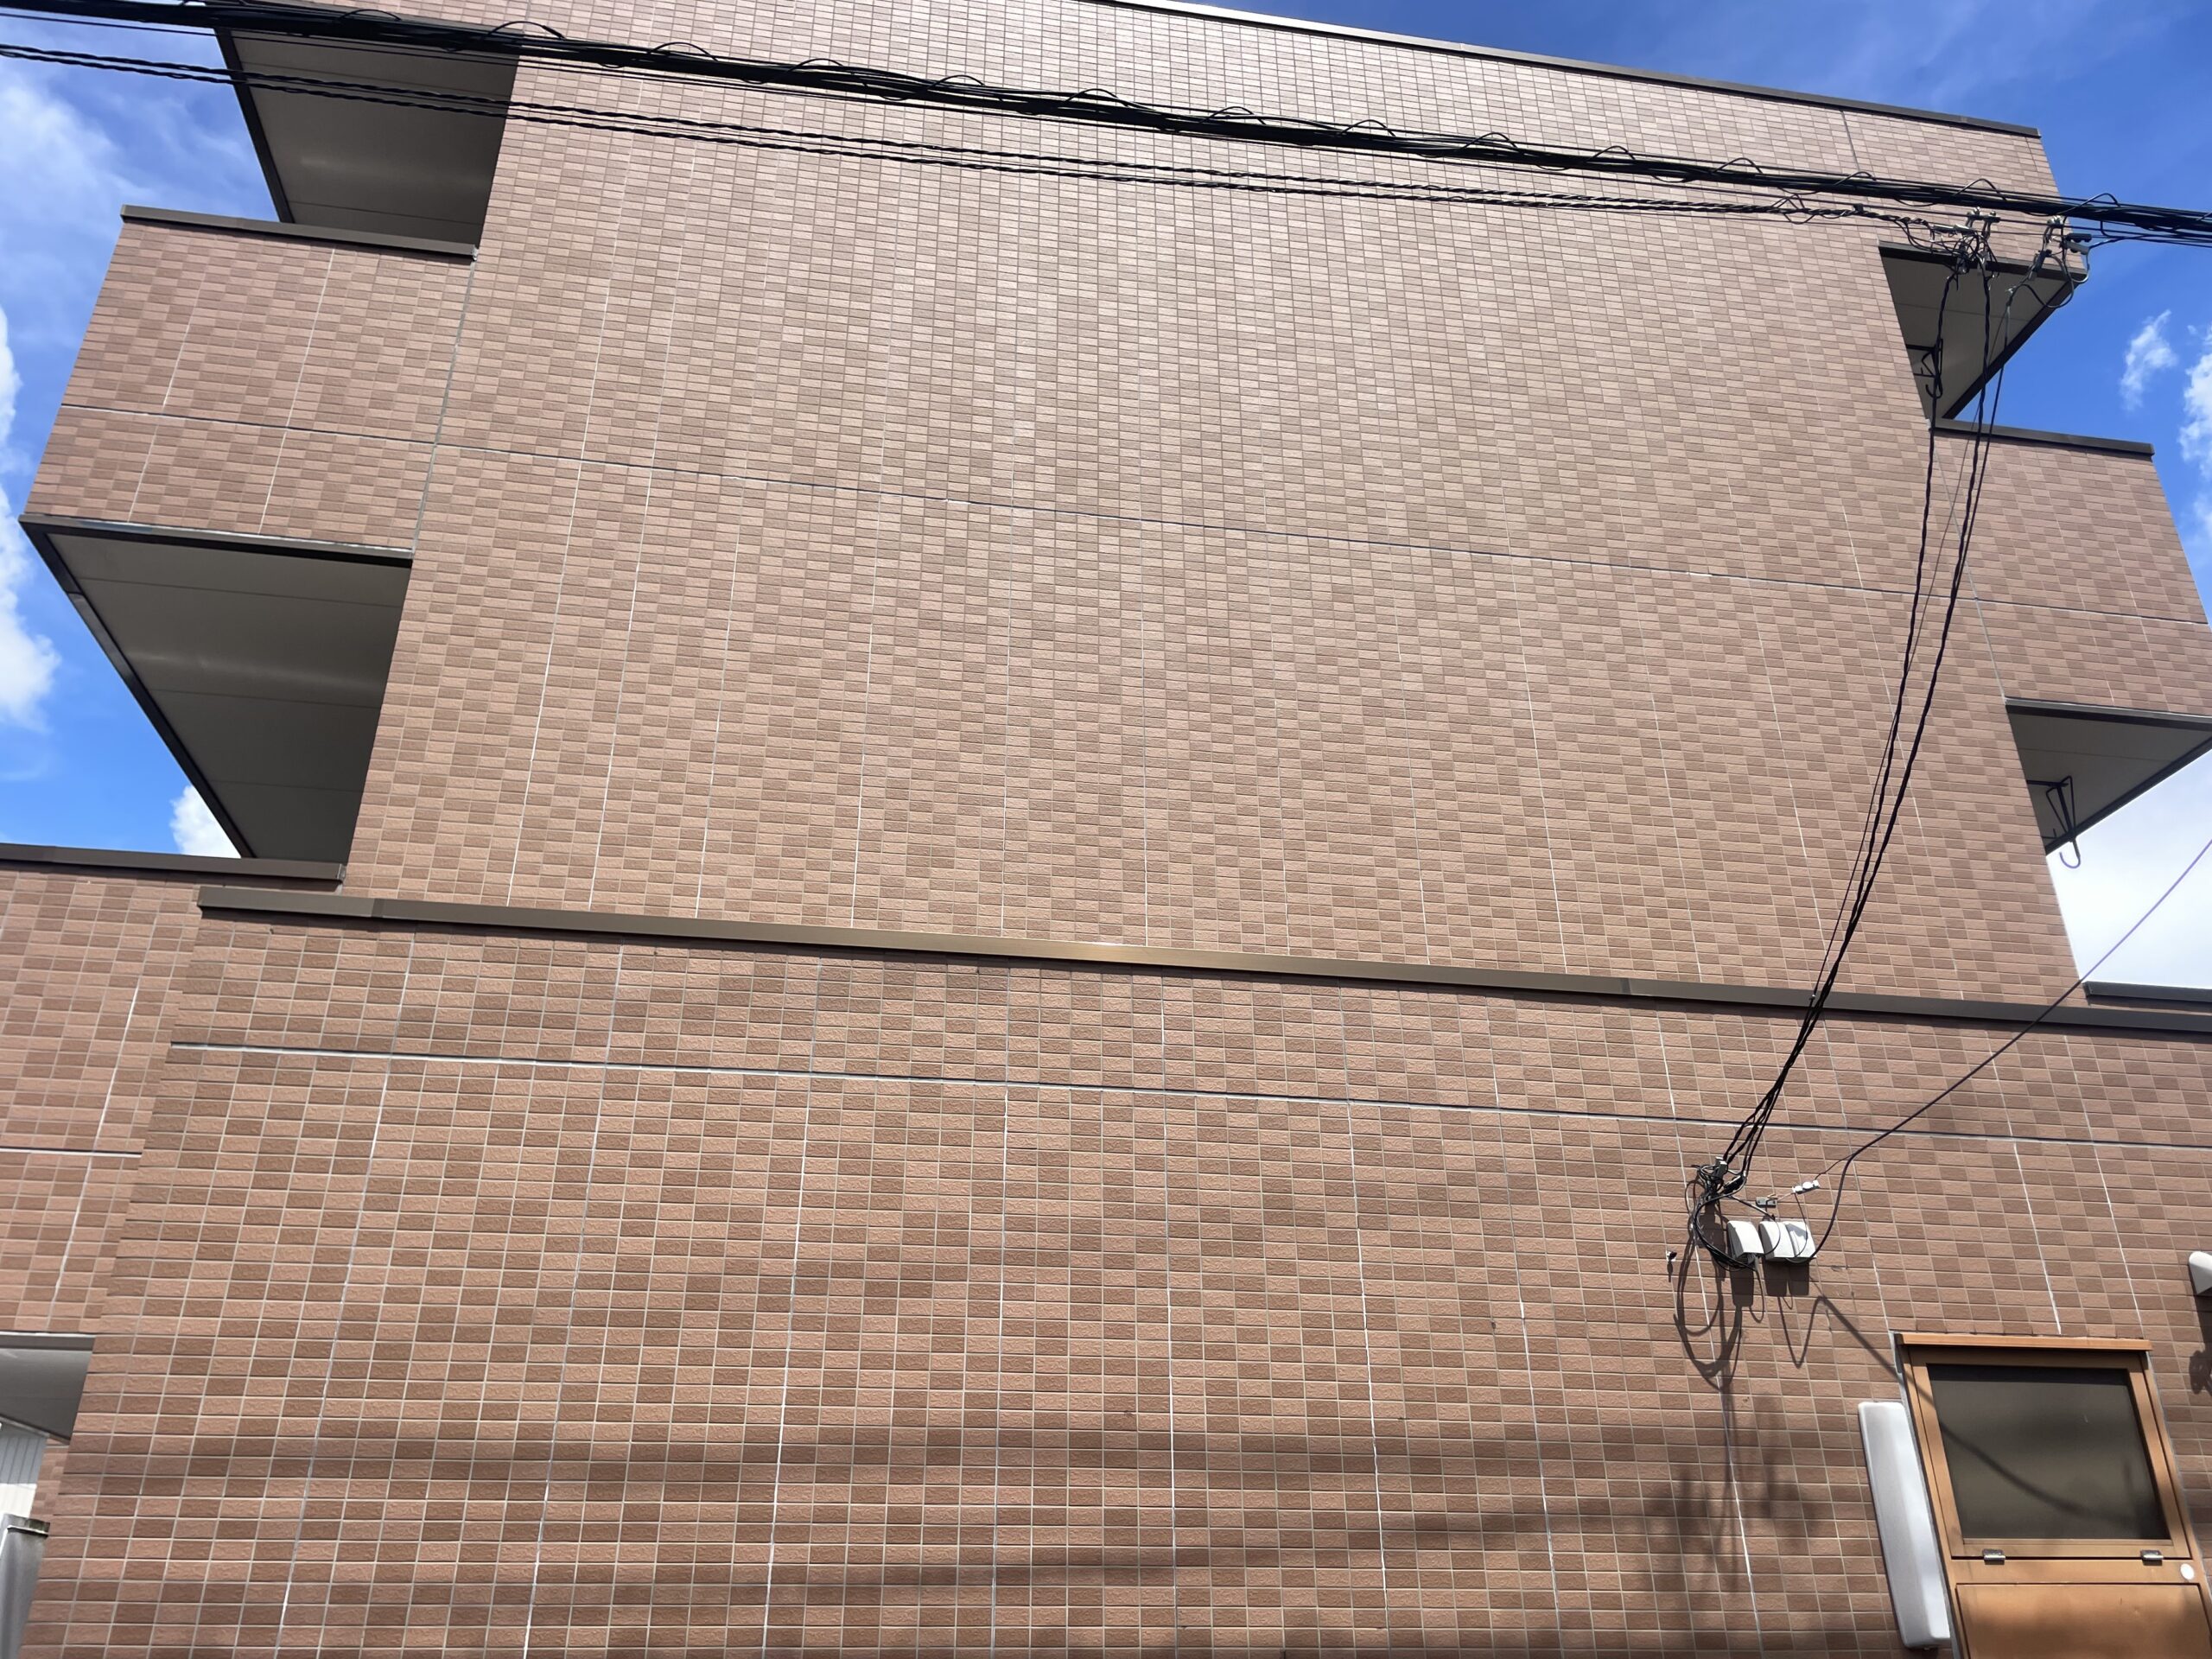 川越市のマンションで外壁を茶色から明るいホワイト系に、コーキングも全て打替えてタイルにはクリアー塗装を行いました。施工前